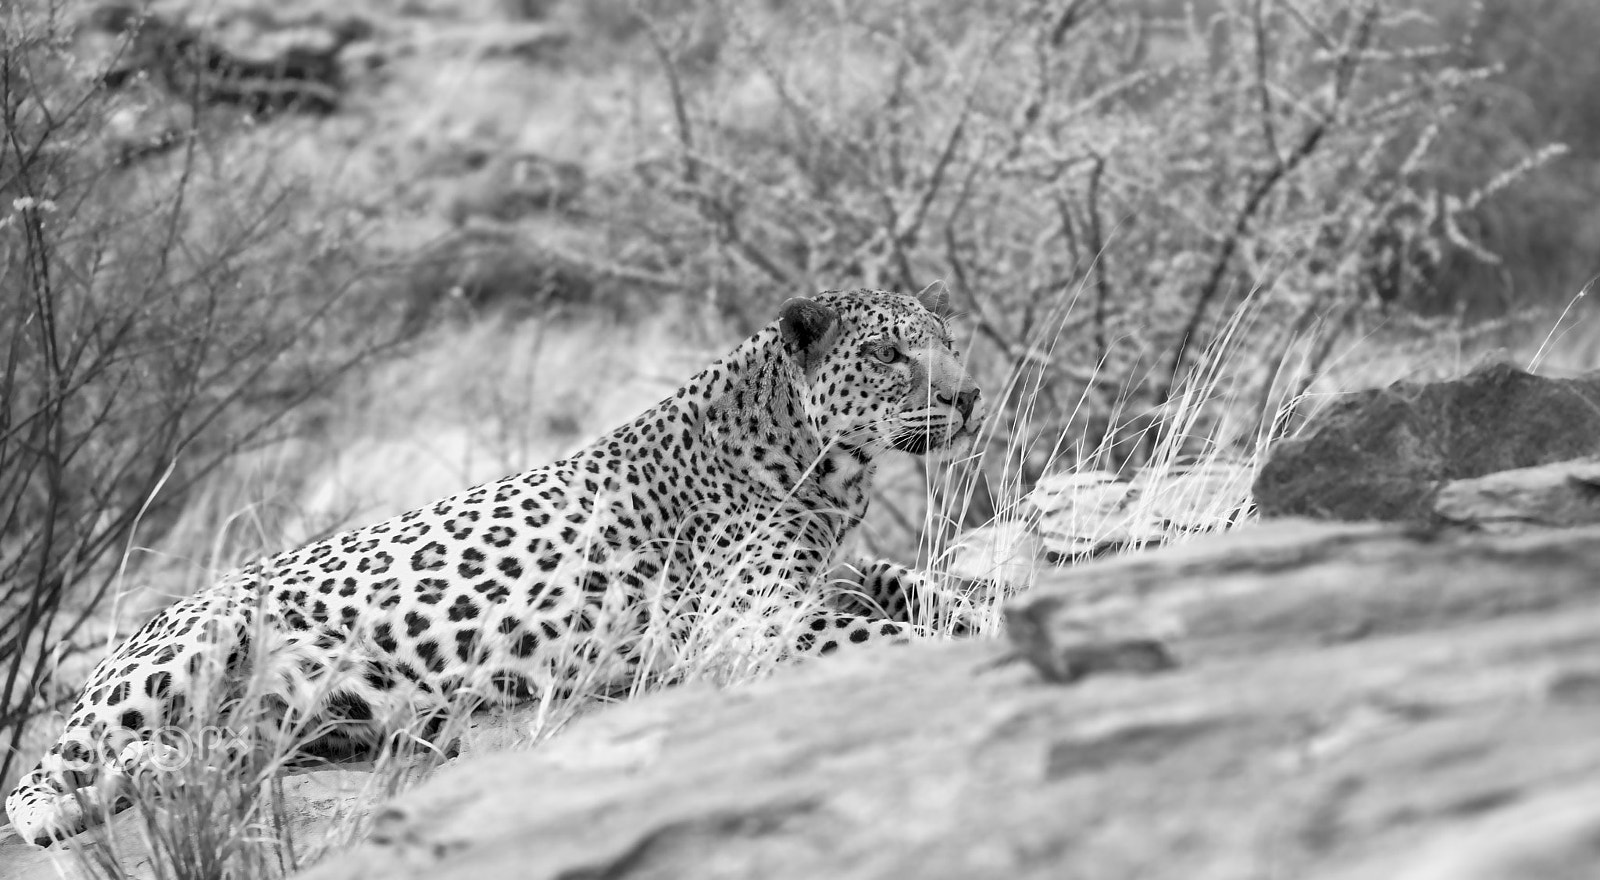 Canon EOS 5D sample photo. Induna leopard photography